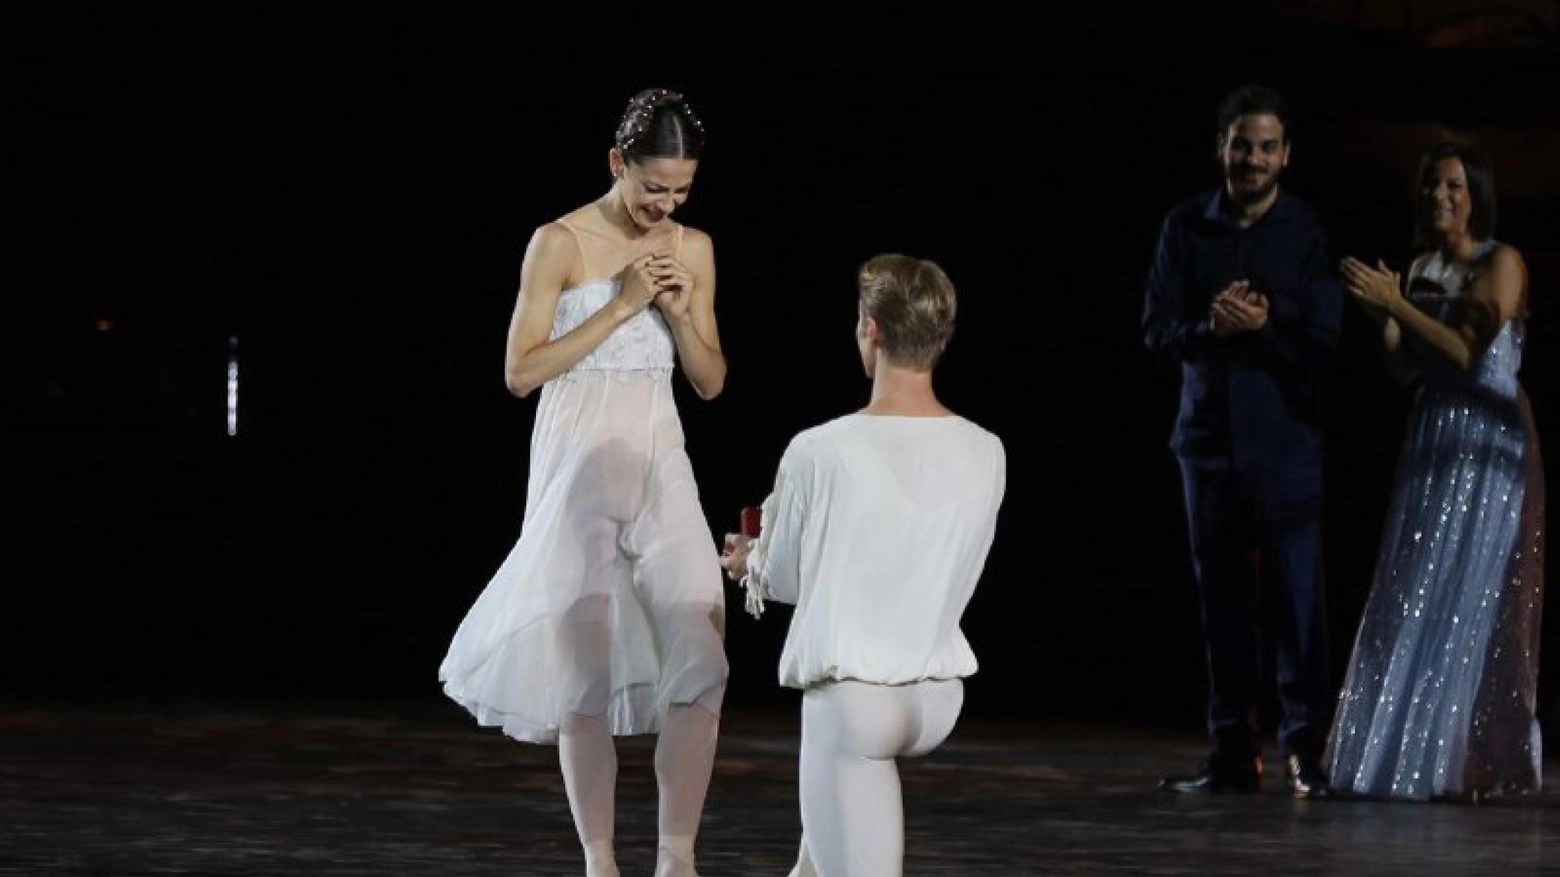 Arena di Verona, proposta di matrimonio di Timofej Andrijashenko a Nicoletta Manni